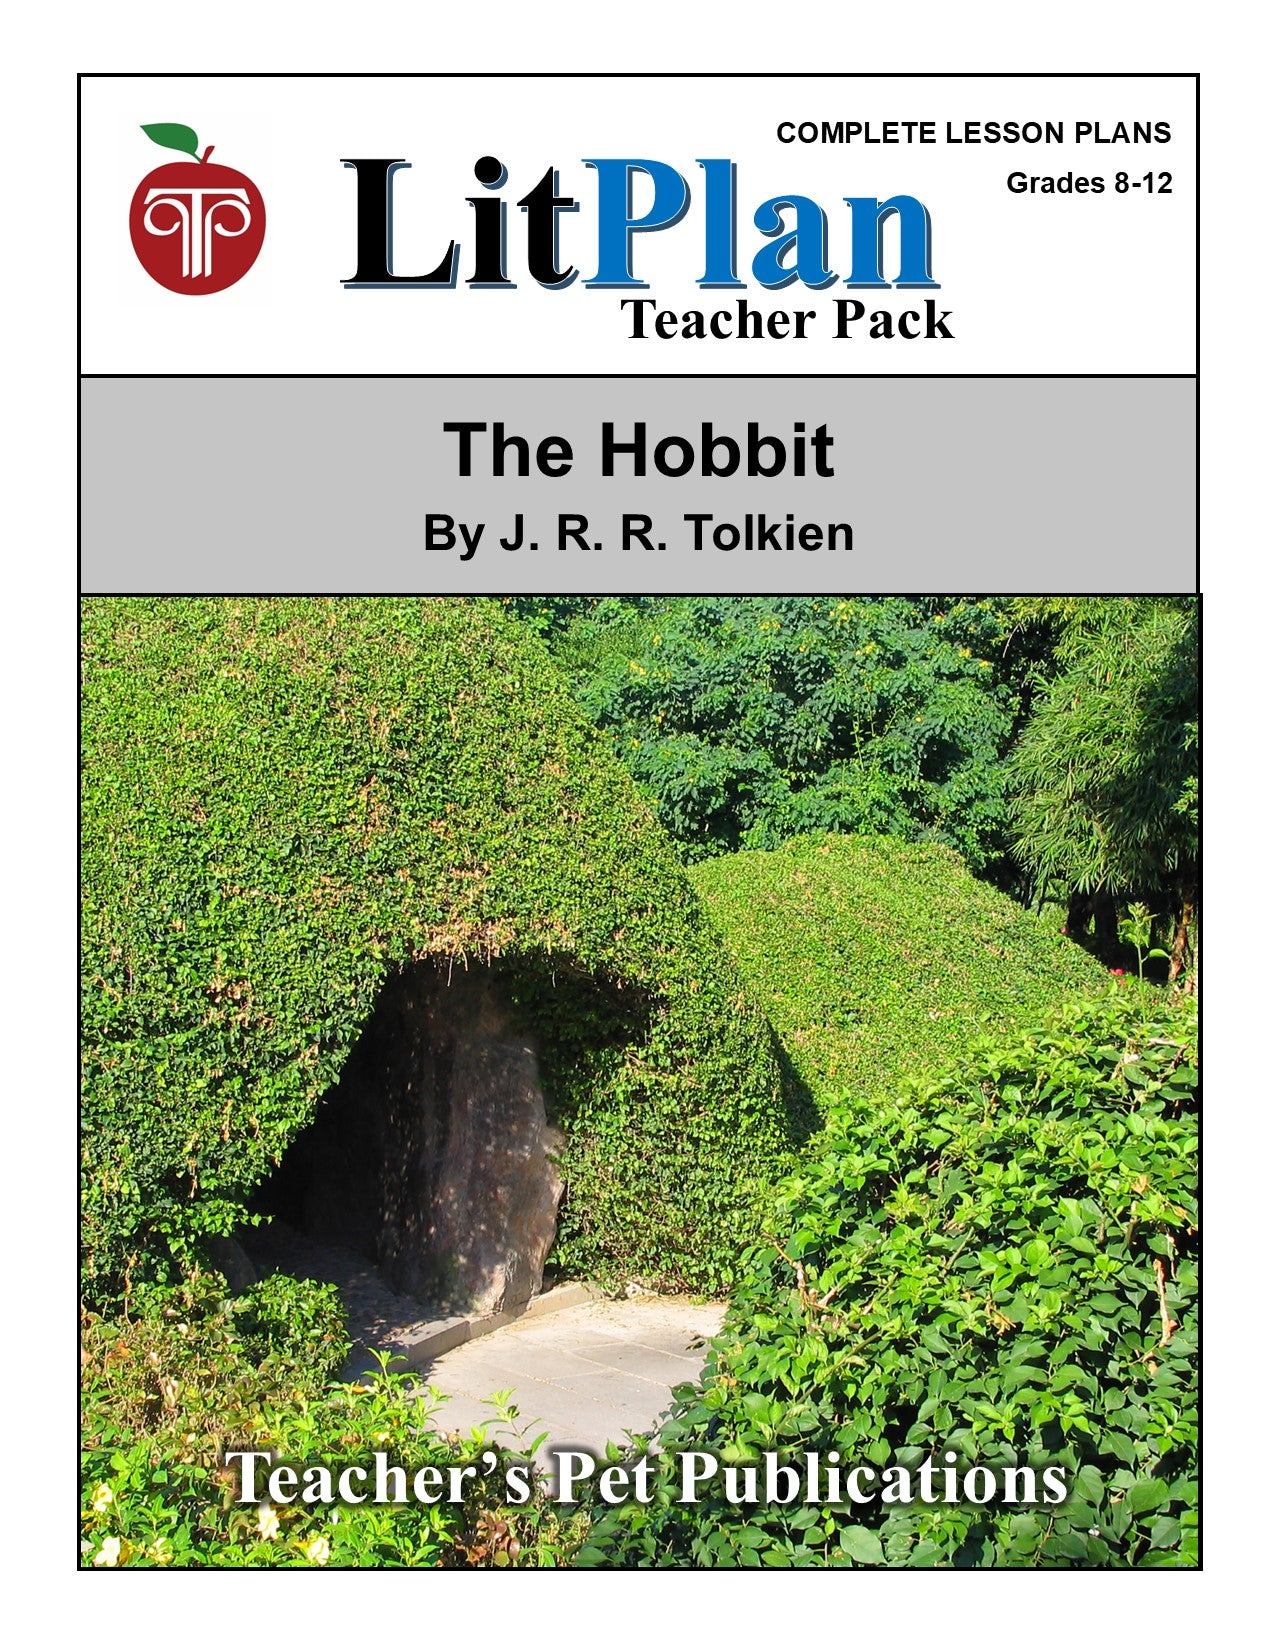 The Hobbit: LitPlan Teacher Pack Grades 8-12